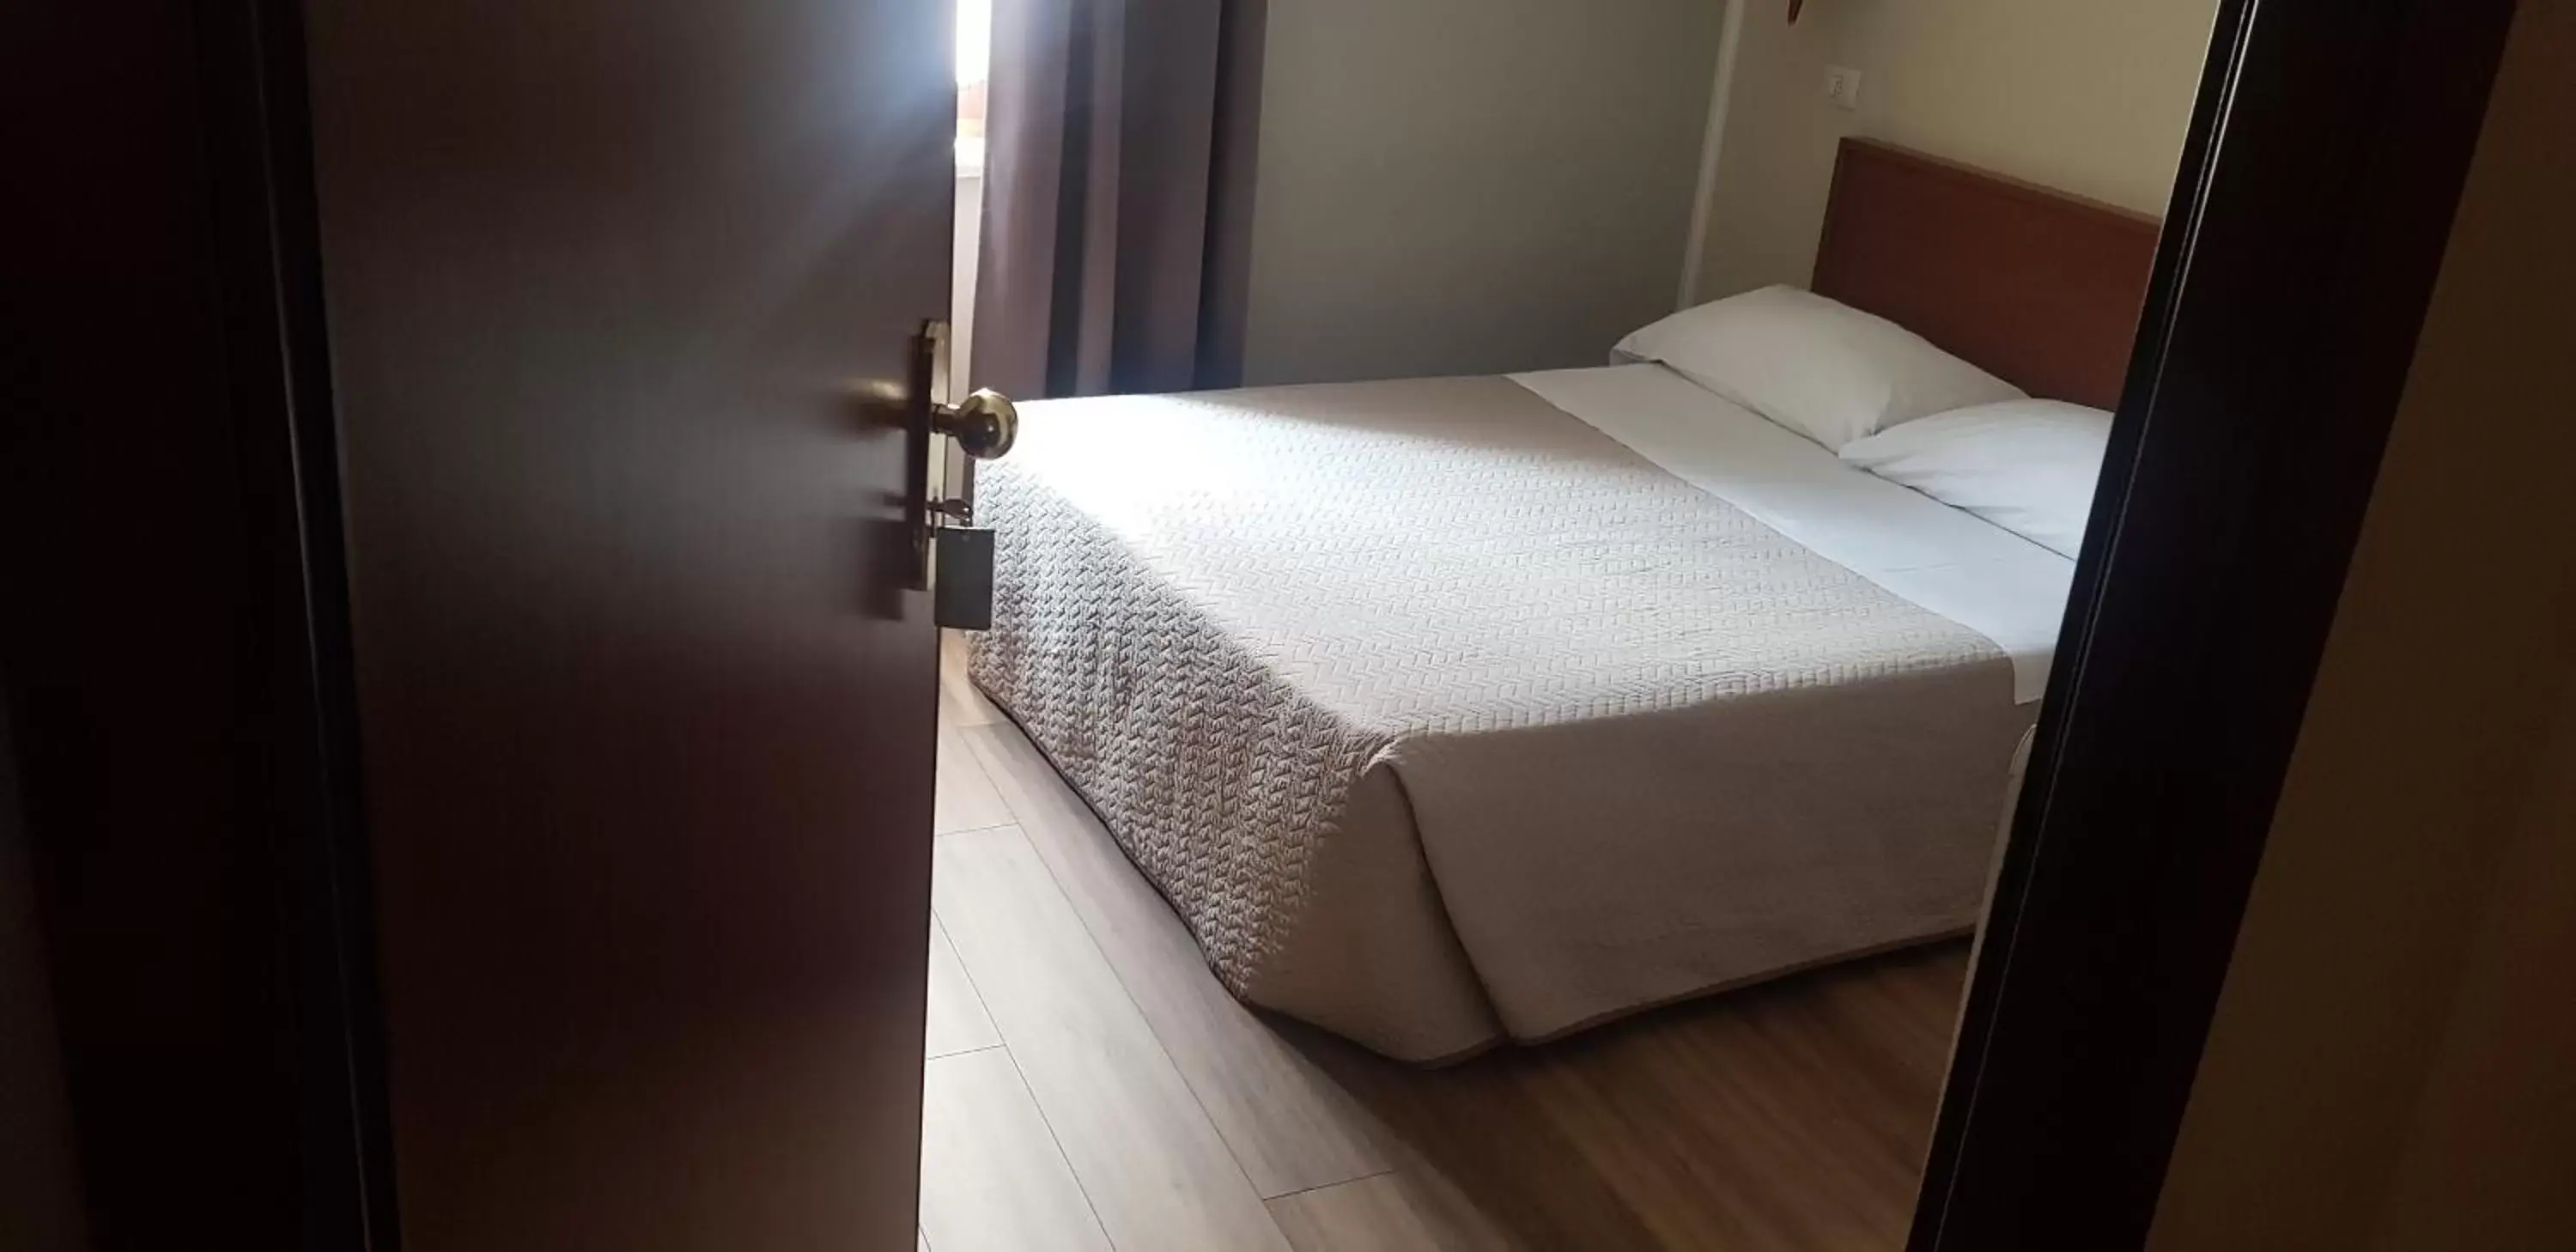 Bed in Hotel Alpi Resort